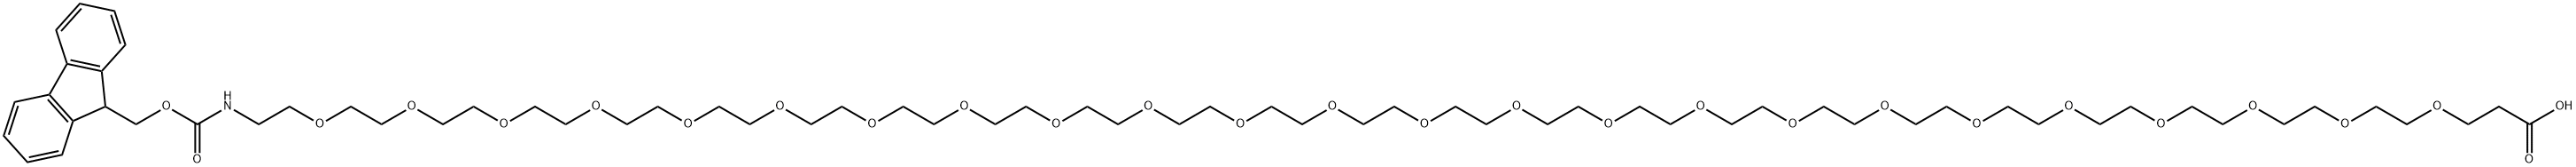 Fmoc-N-amido-PEG24-acid Structure